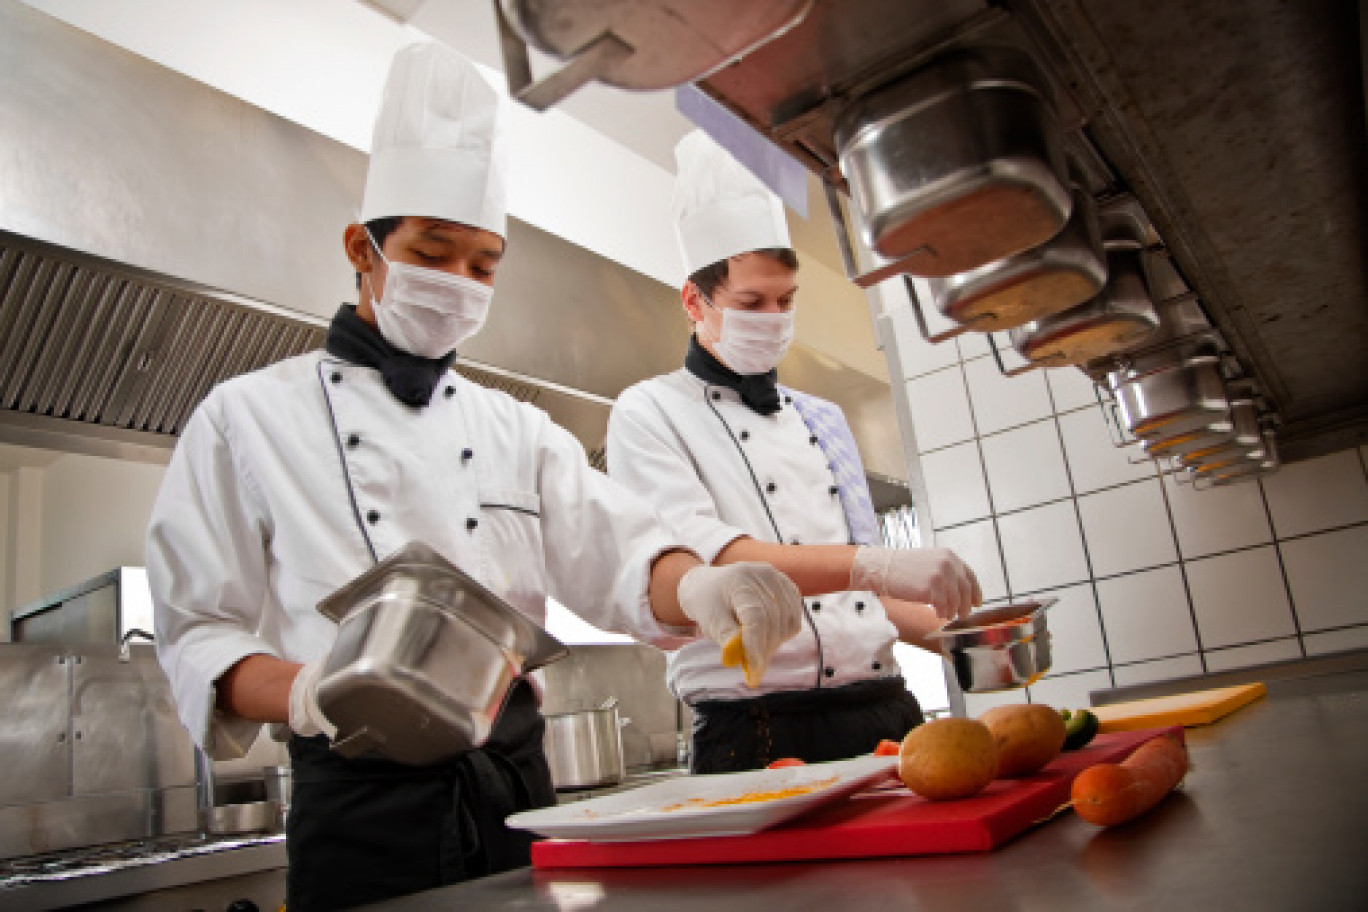 920 offres de recrutement d'aides et apprentis de cuisine en Moselle ont été déposés en 2021 à Pôle emploi, dont la moitié avait du mal à être pourvue. 